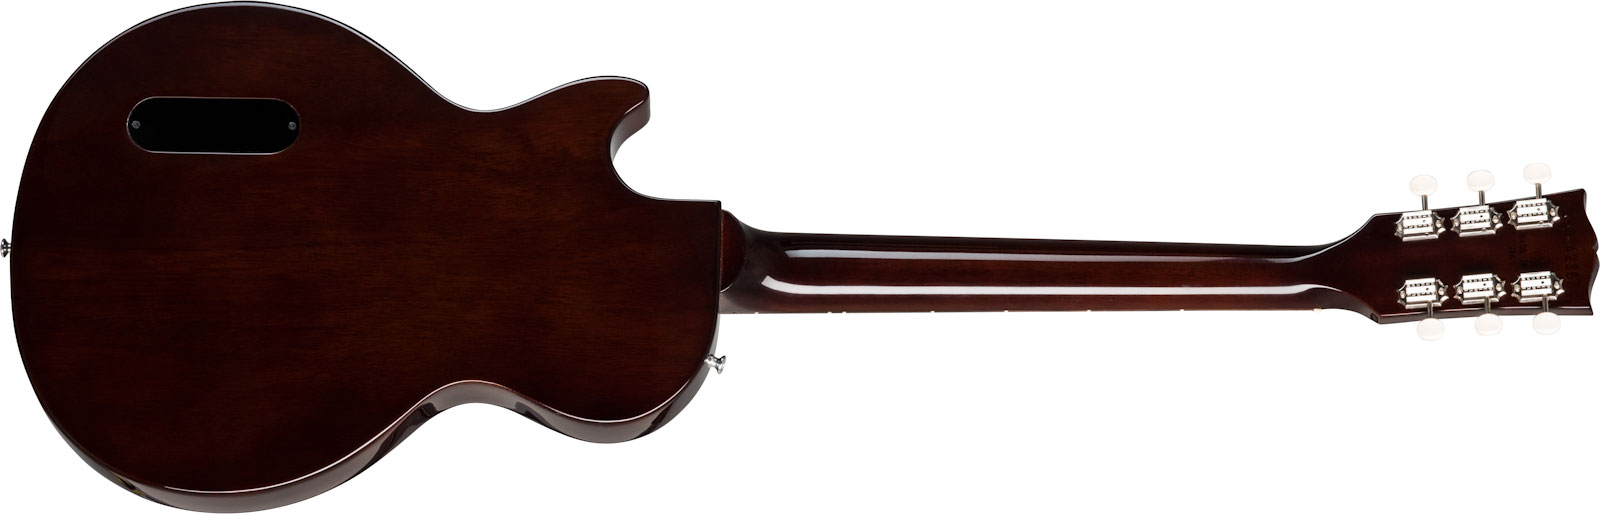 Gibson Les Paul Special Lh Original Gaucher 2p90 Ht Rw - Vintage Tobacco Burst - Guitare Électrique Gaucher - Variation 1